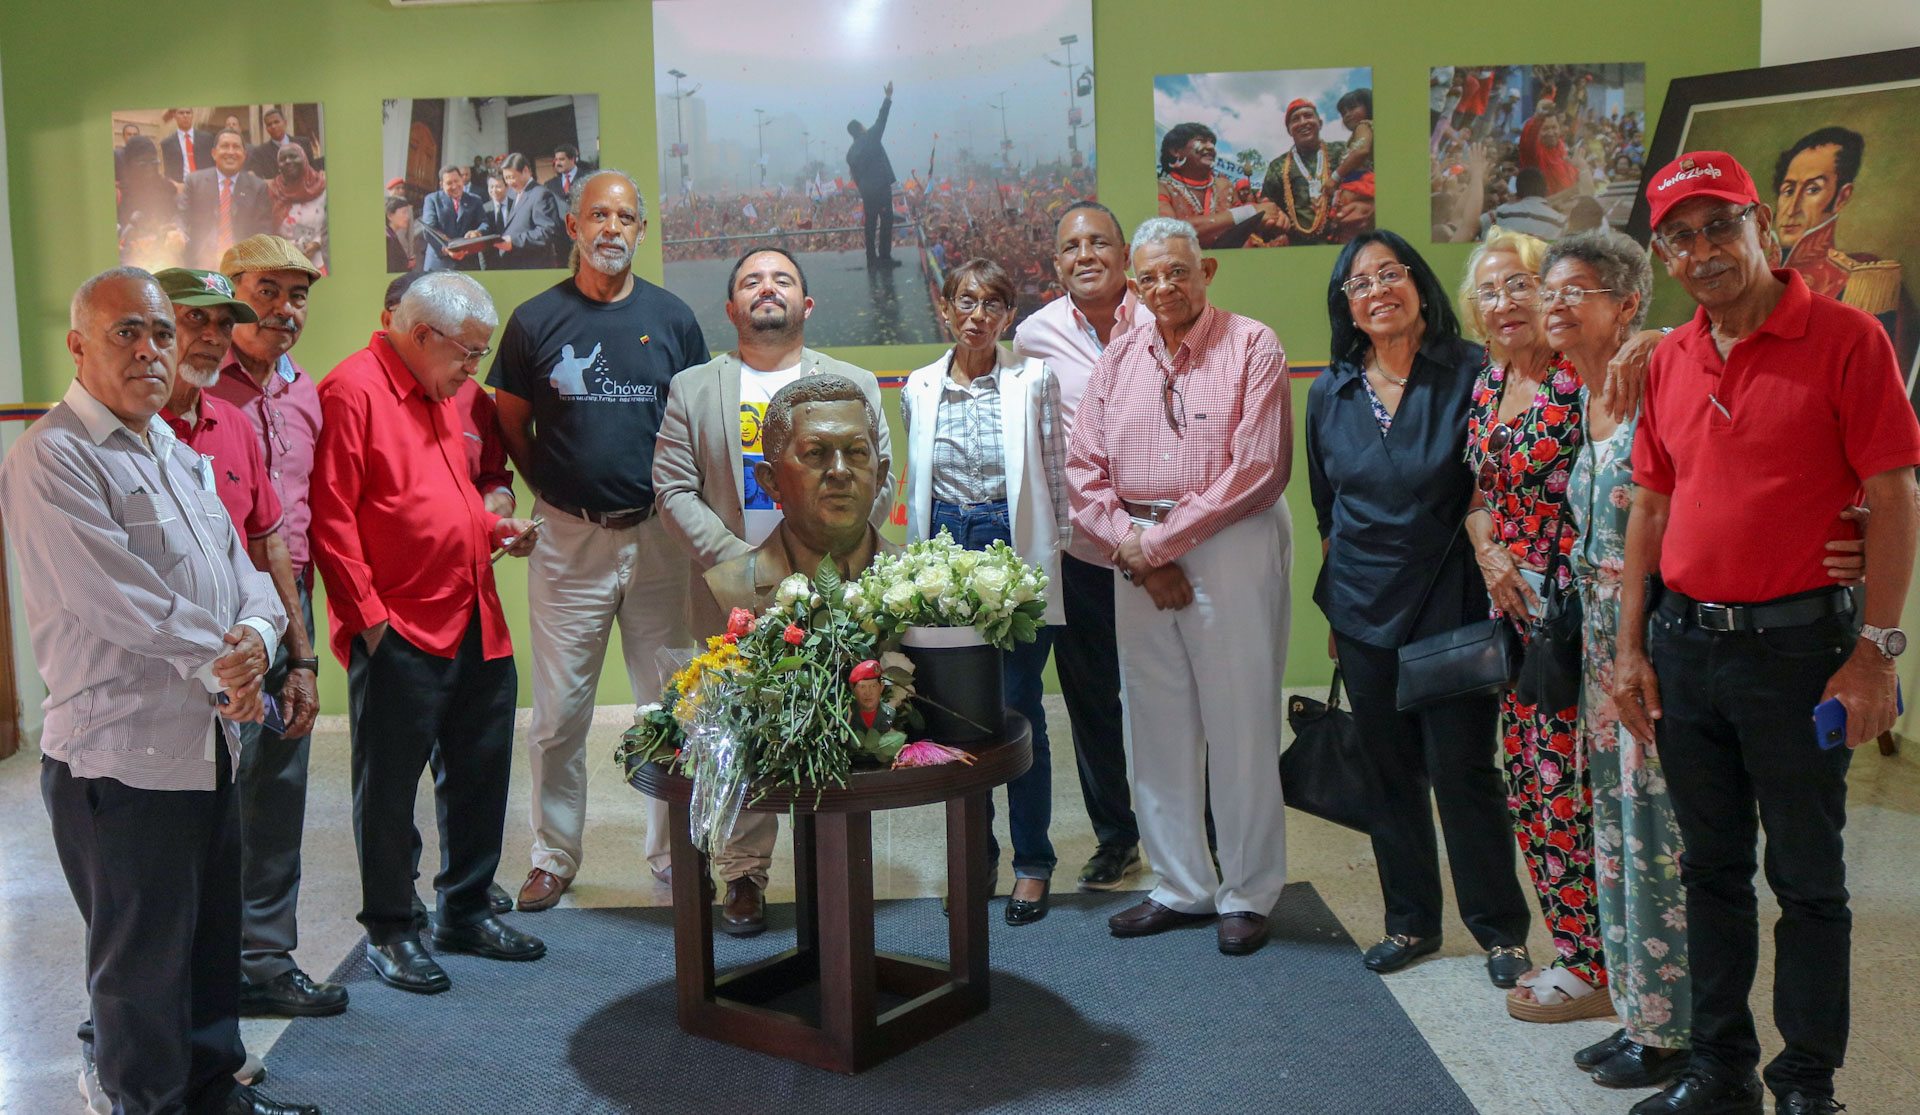 Dominicanos recordaron con amor y respeto legado integracionista del comandante Chávez